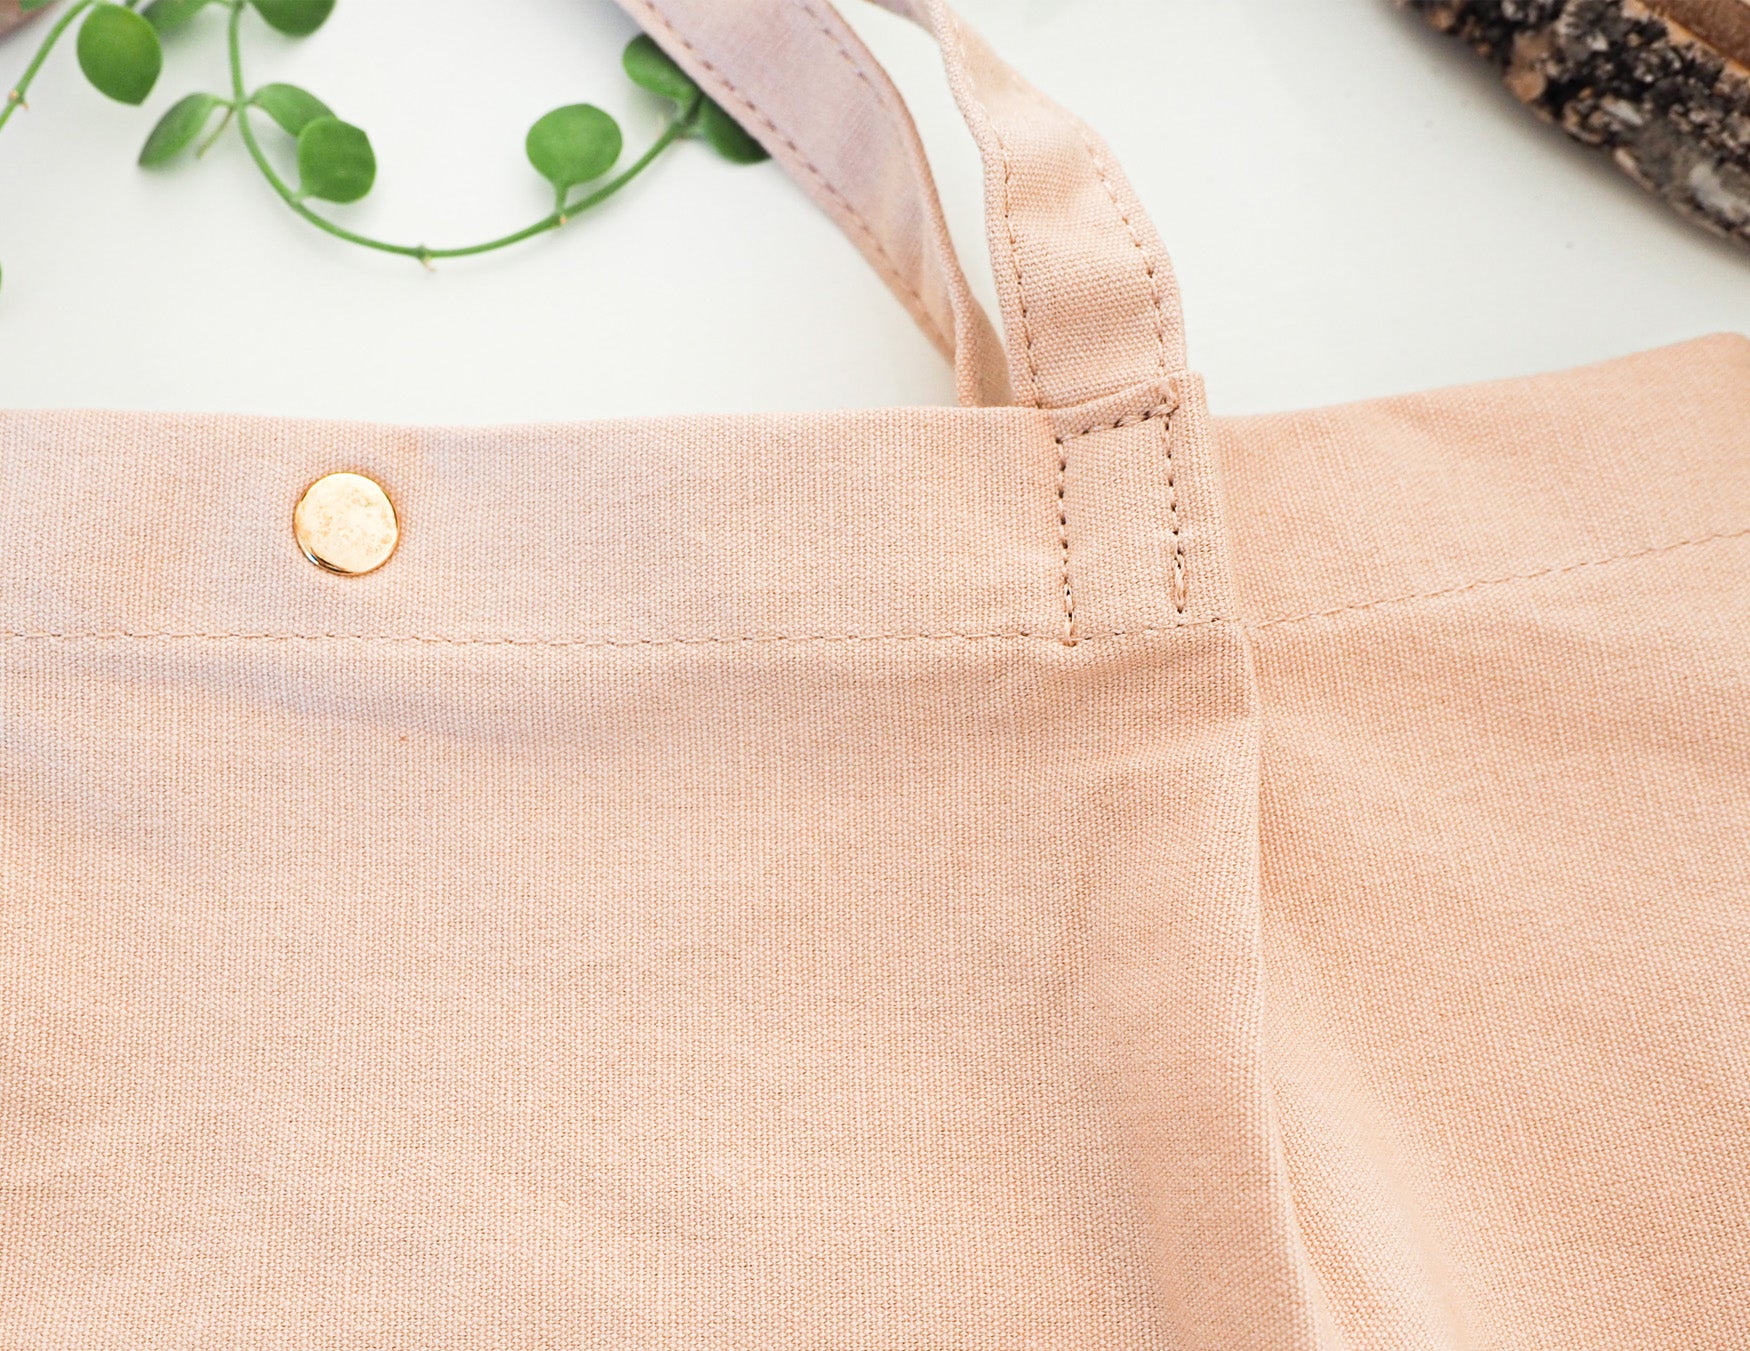 Sac maman-bébé Athena en cuir original 👍🏻✓ 3 pieces Athena Leather Care  Bag est conçu pour répondre aux besoins des mères qui préfèrent a…